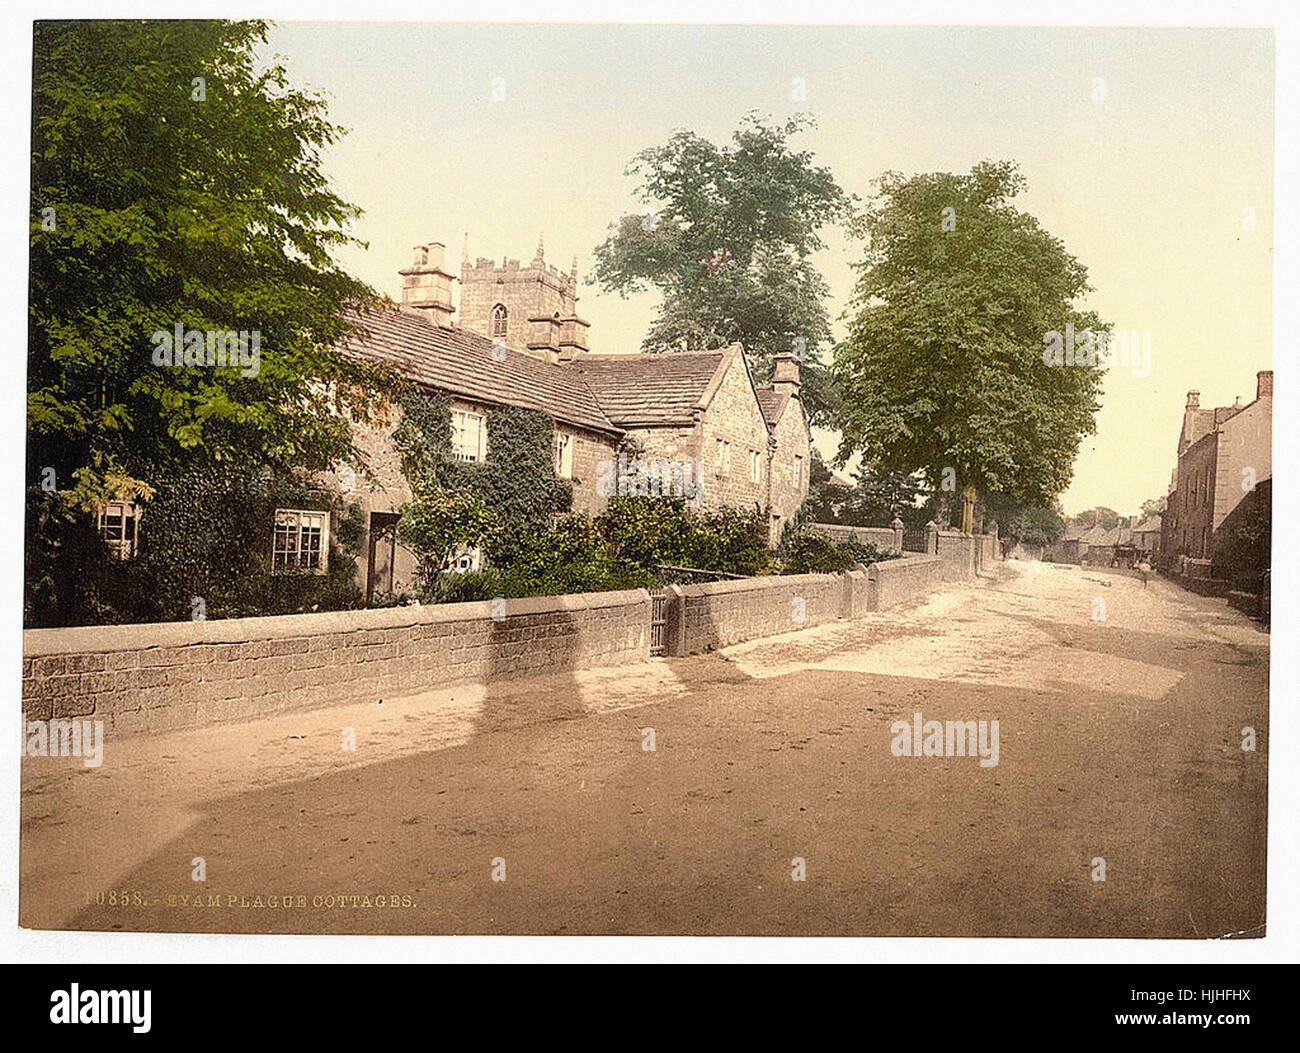 Eyam Plague Cottages, Derbyshire, England   - Photochrom XIXth century Stock Photo